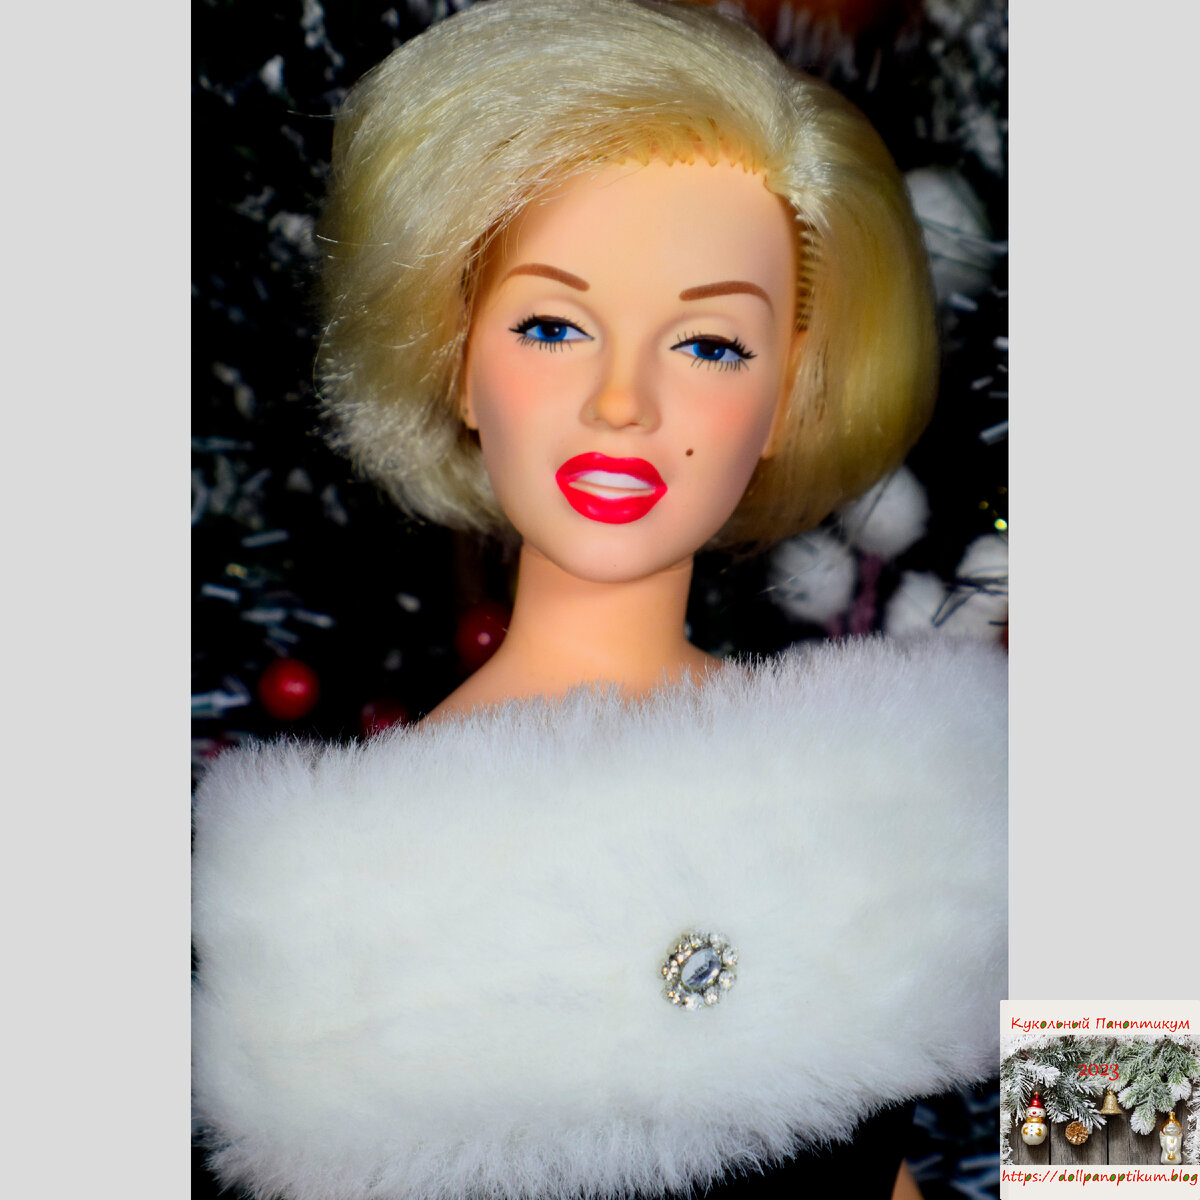 Портретные куклы Мерлин Монро от Роберта Тоннера появятся в продаже осенью 2012 года